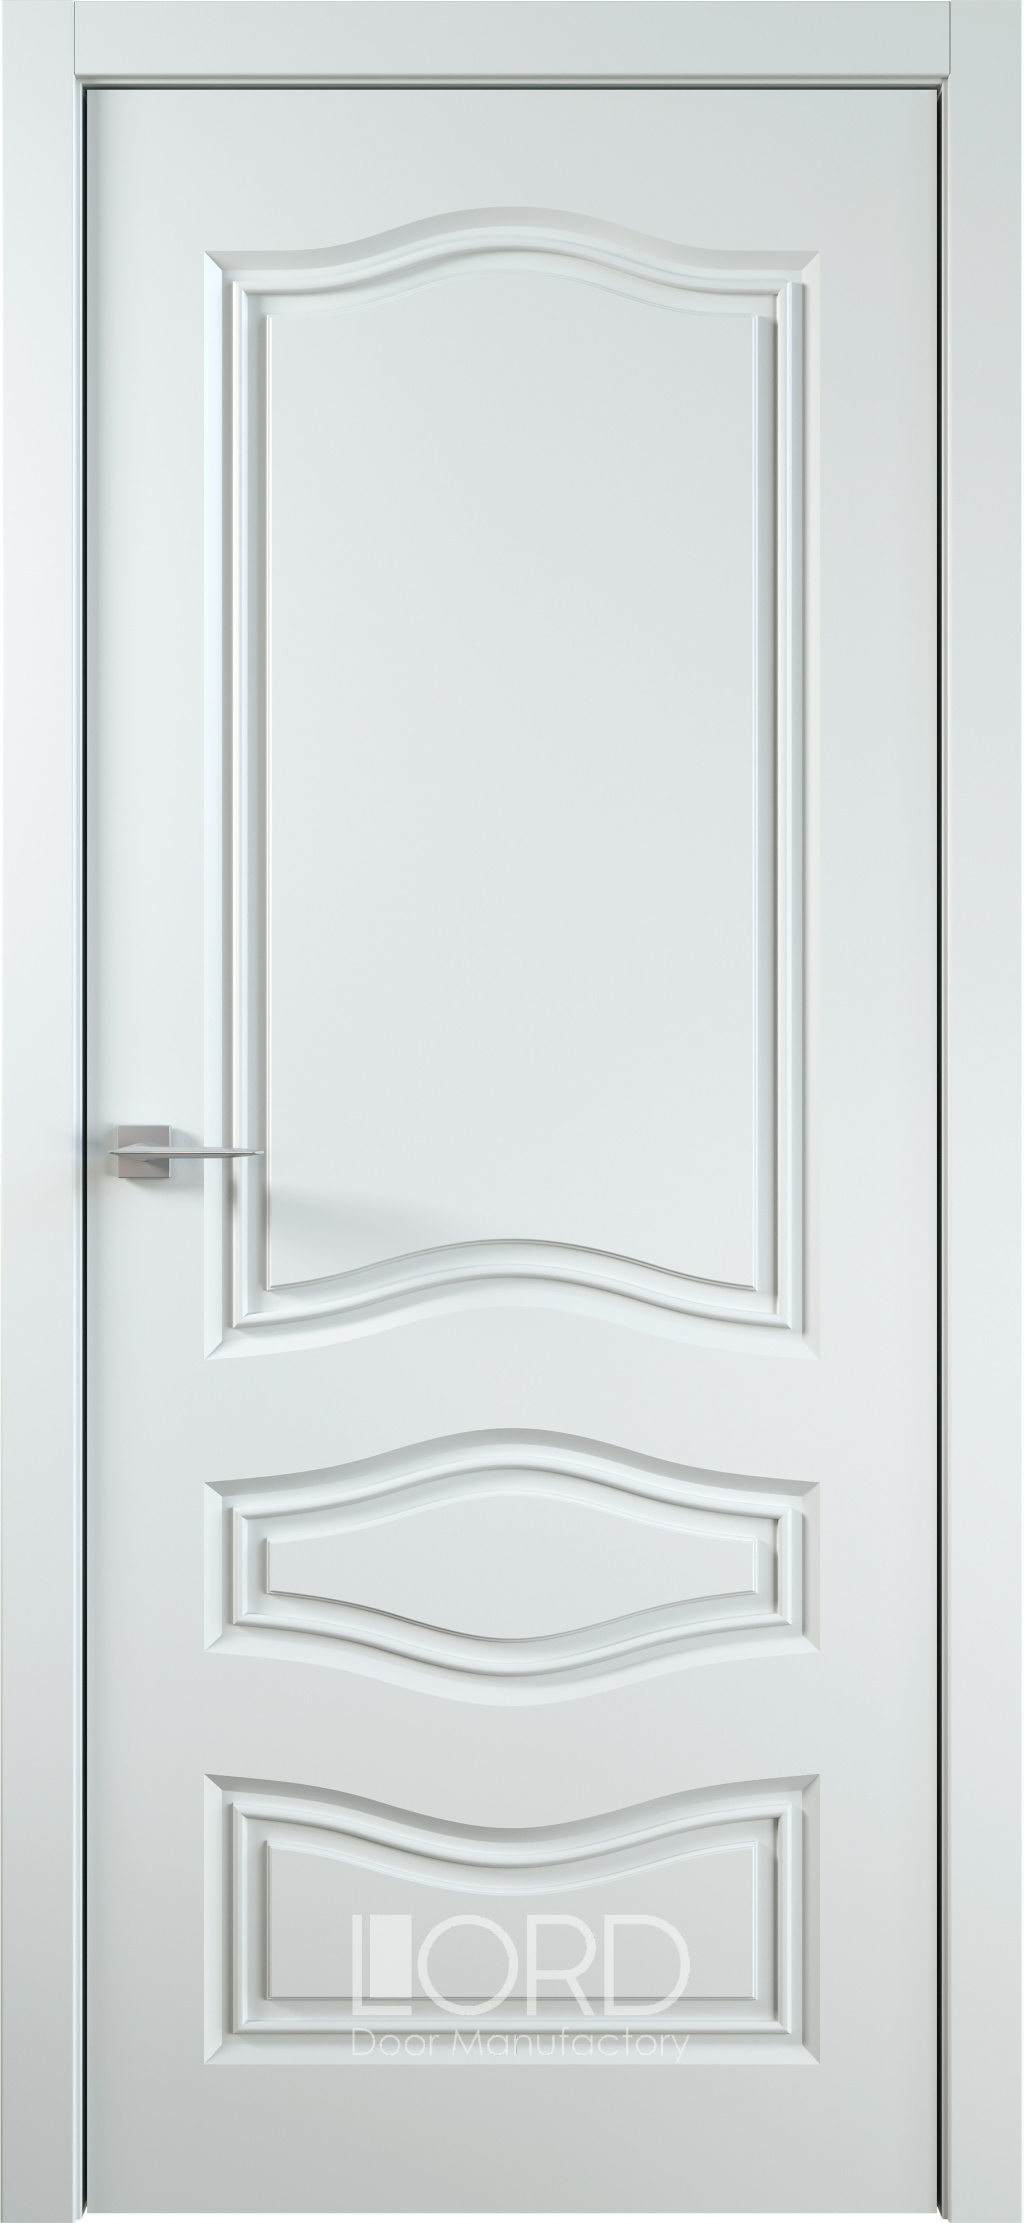 Лорд Межкомнатная дверь Ренессанс 9 ДГ, арт. 23029 - фото №1